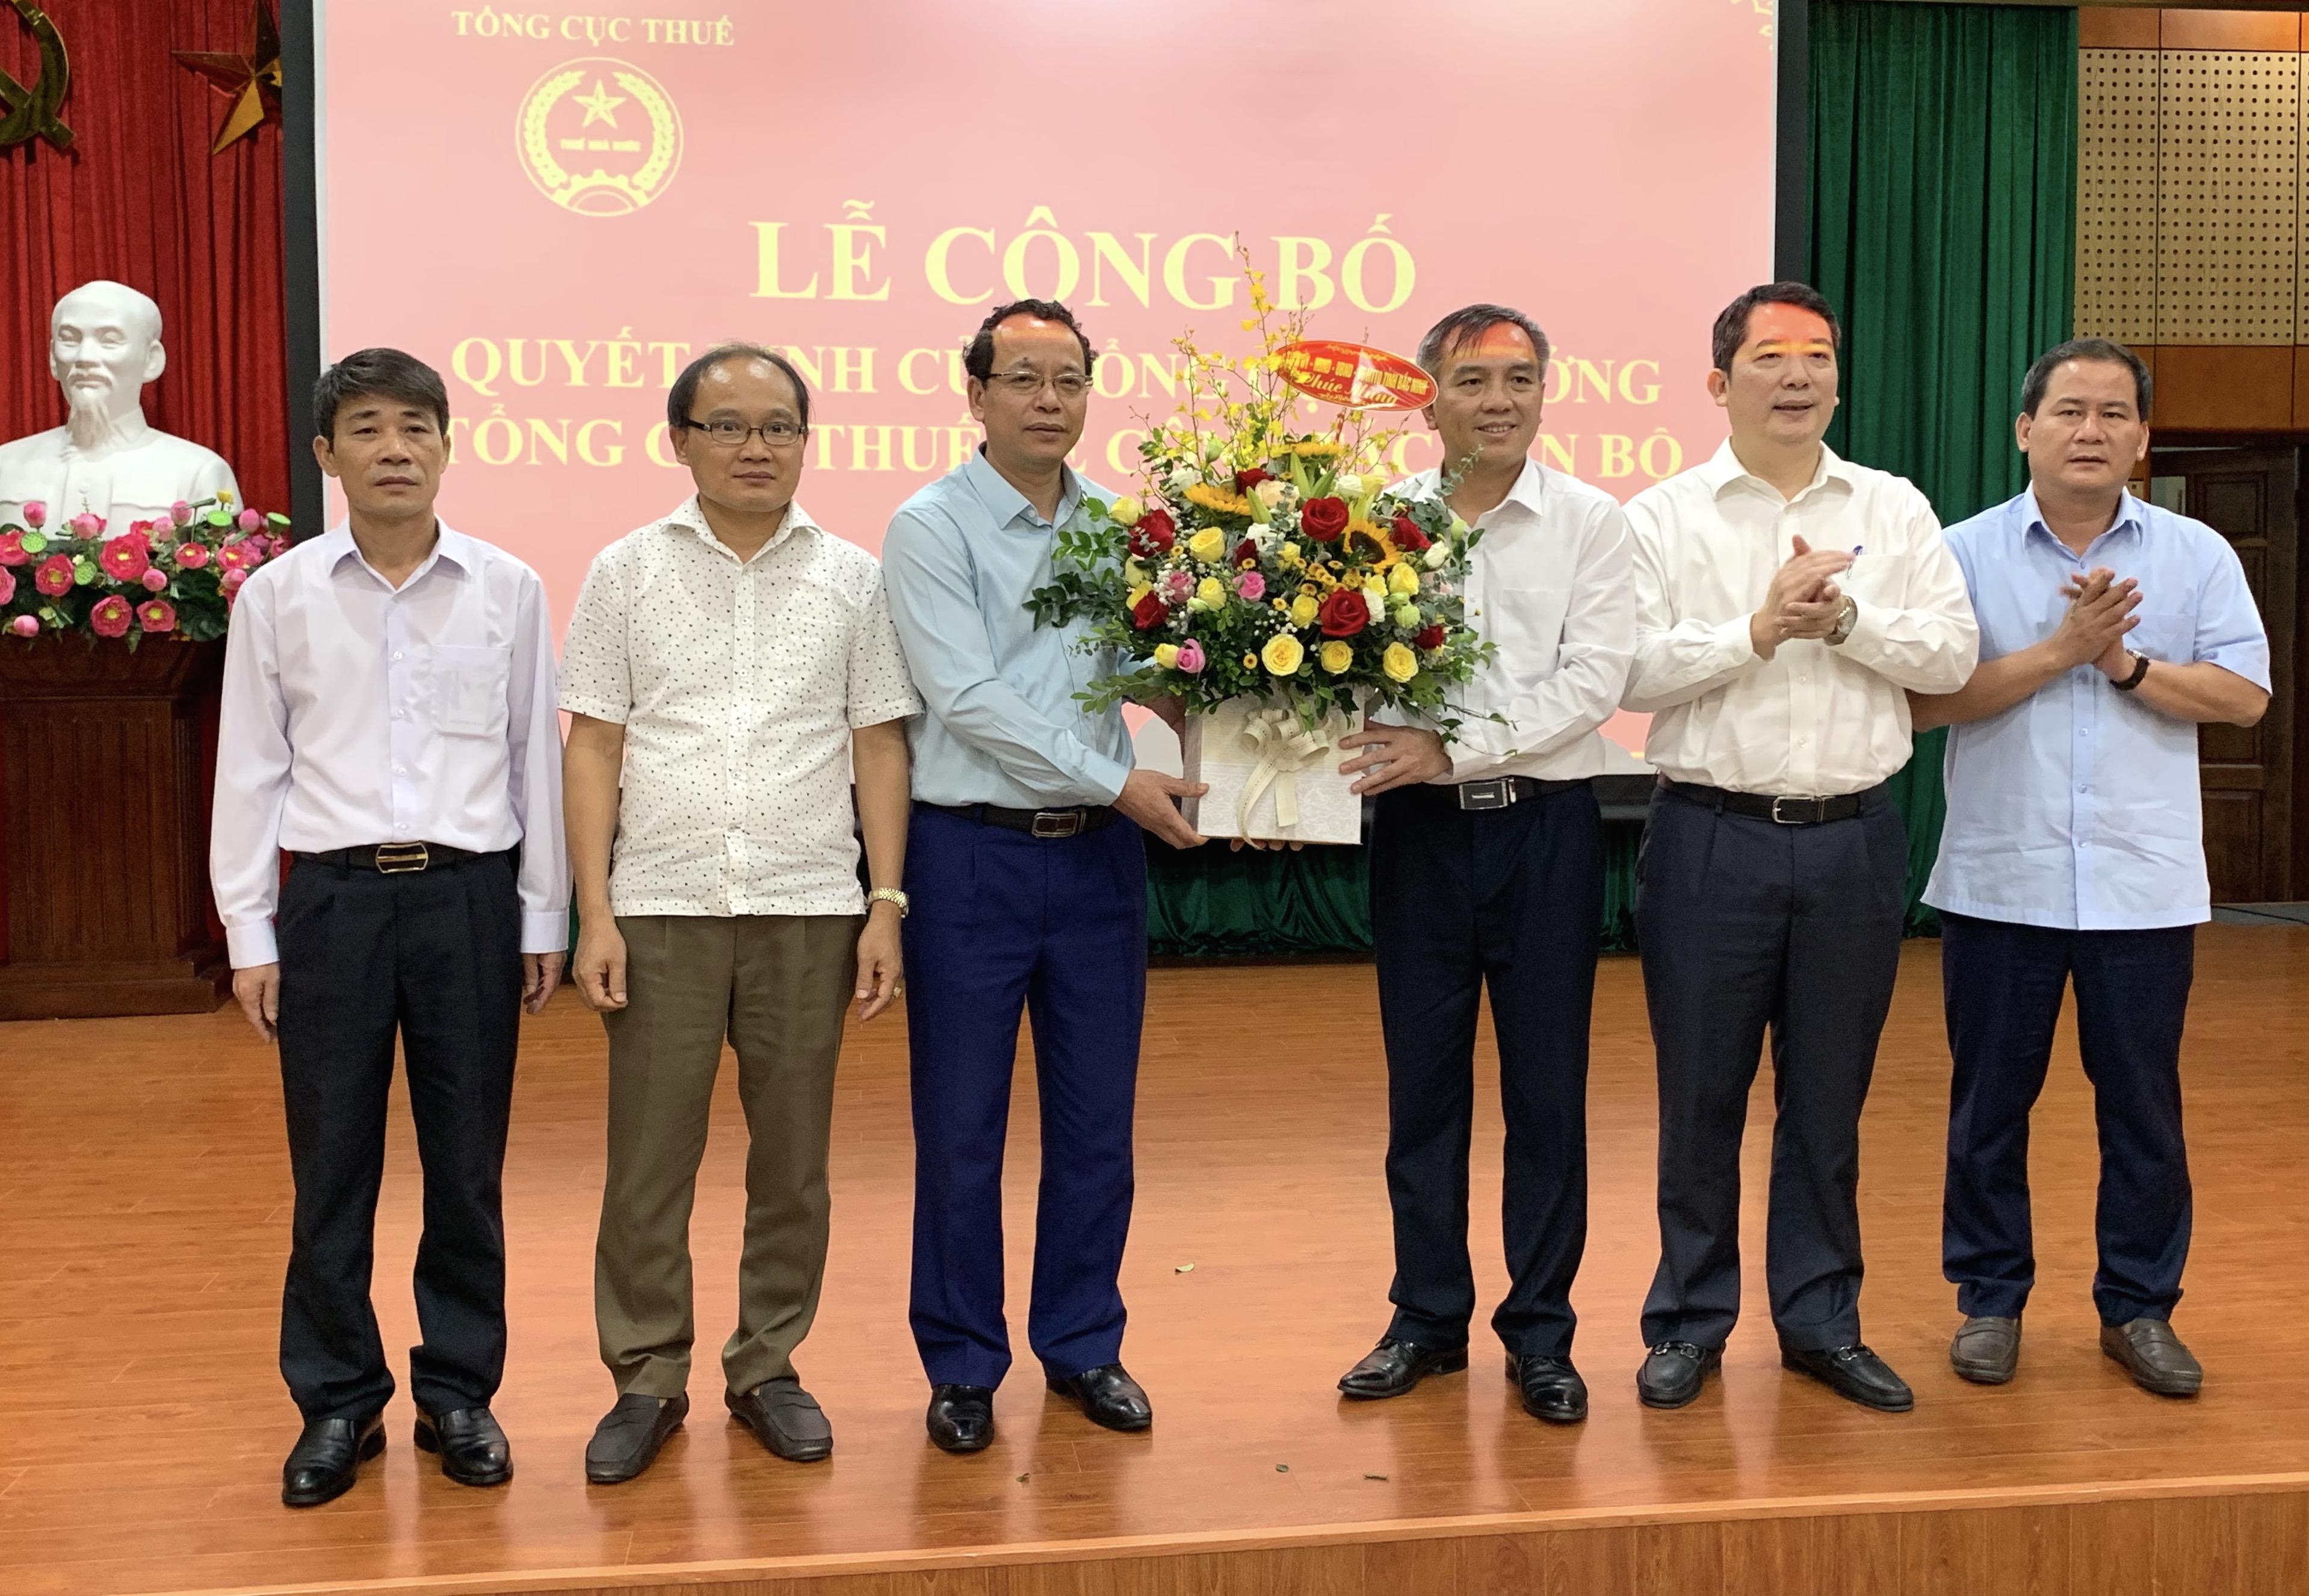 Tổng cục Thuế công bố các quyết định điều động và bổ nhiệm lãnh đạo 2 Cục Thuế Bắc Ninh và Bắc Giang